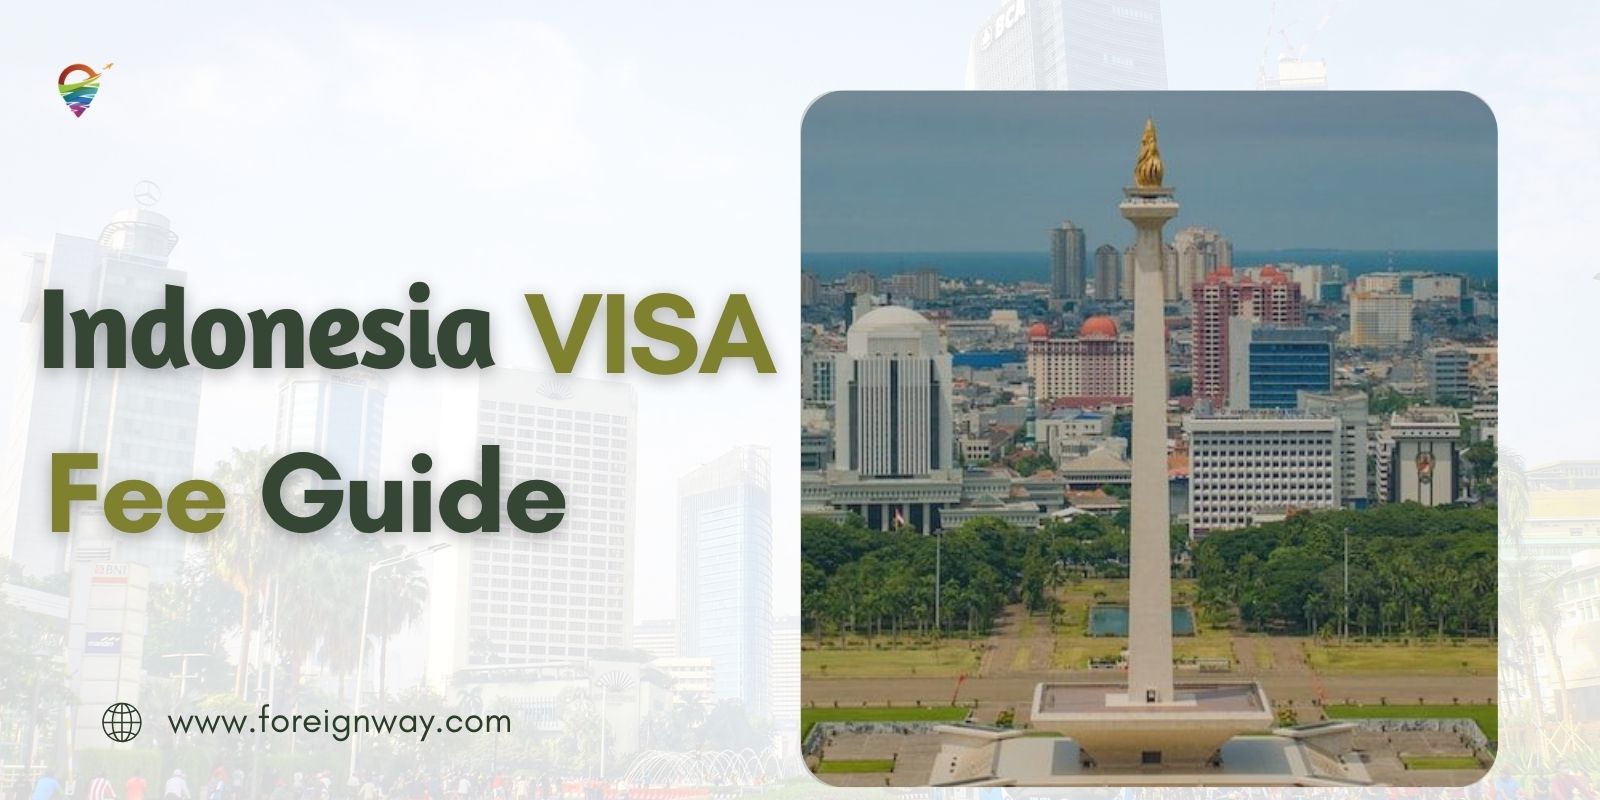 Indonesia visa Fee